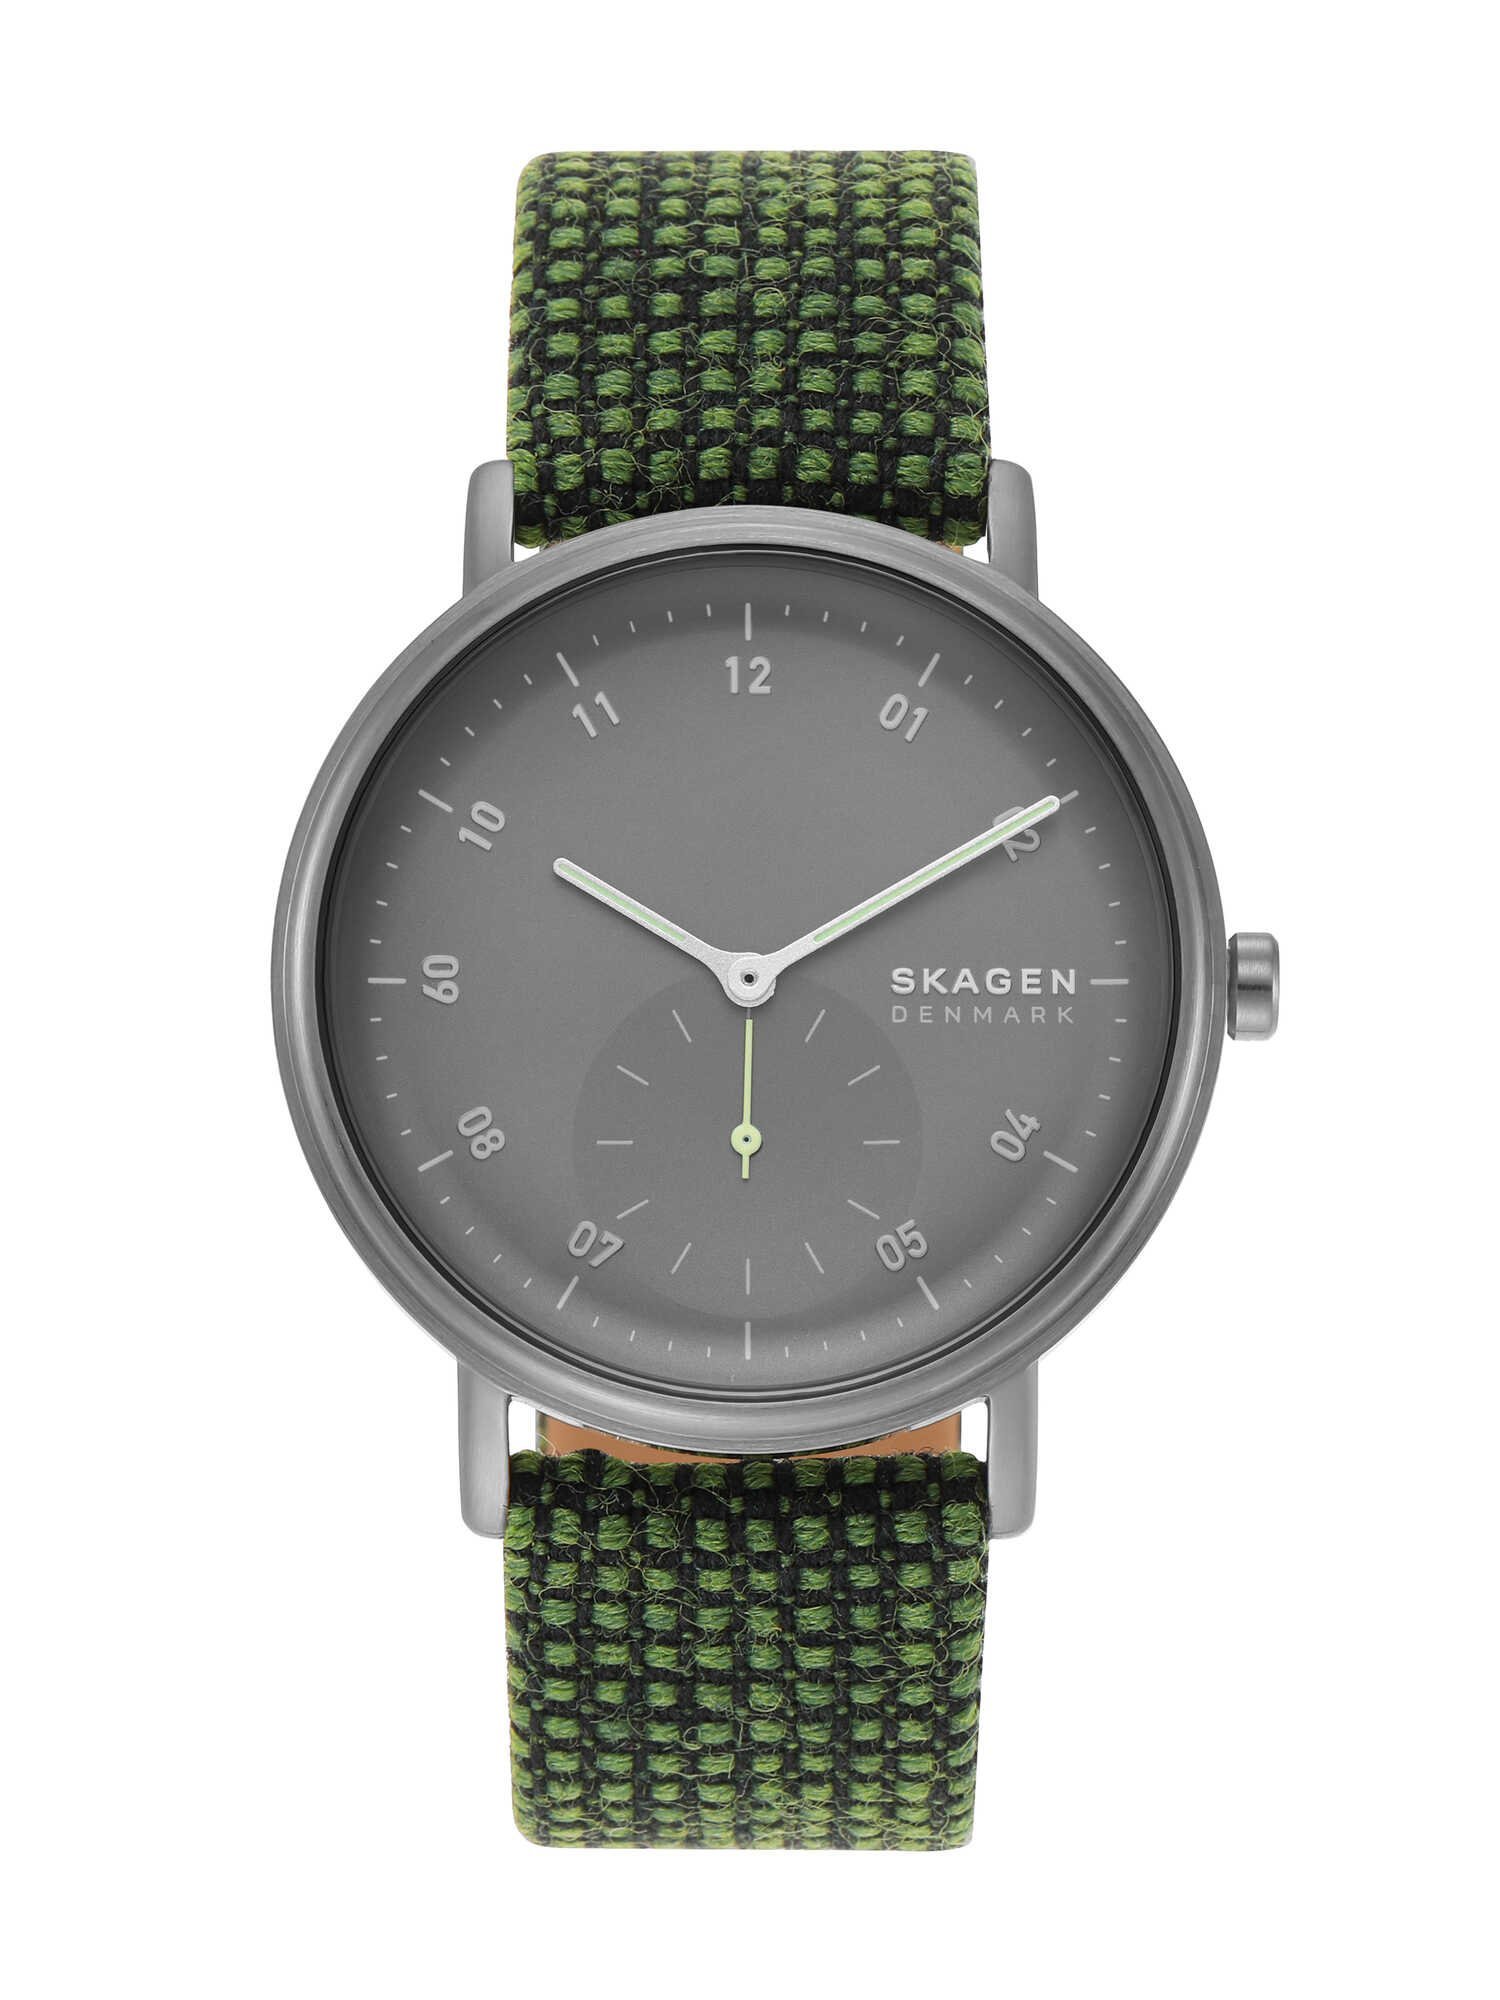 スカーゲン ビジネス腕時計 メンズ SKAGEN KUPPEL SKW6893 スカーゲン アクセサリー・腕時計 腕時計 グリーン【送料無料】